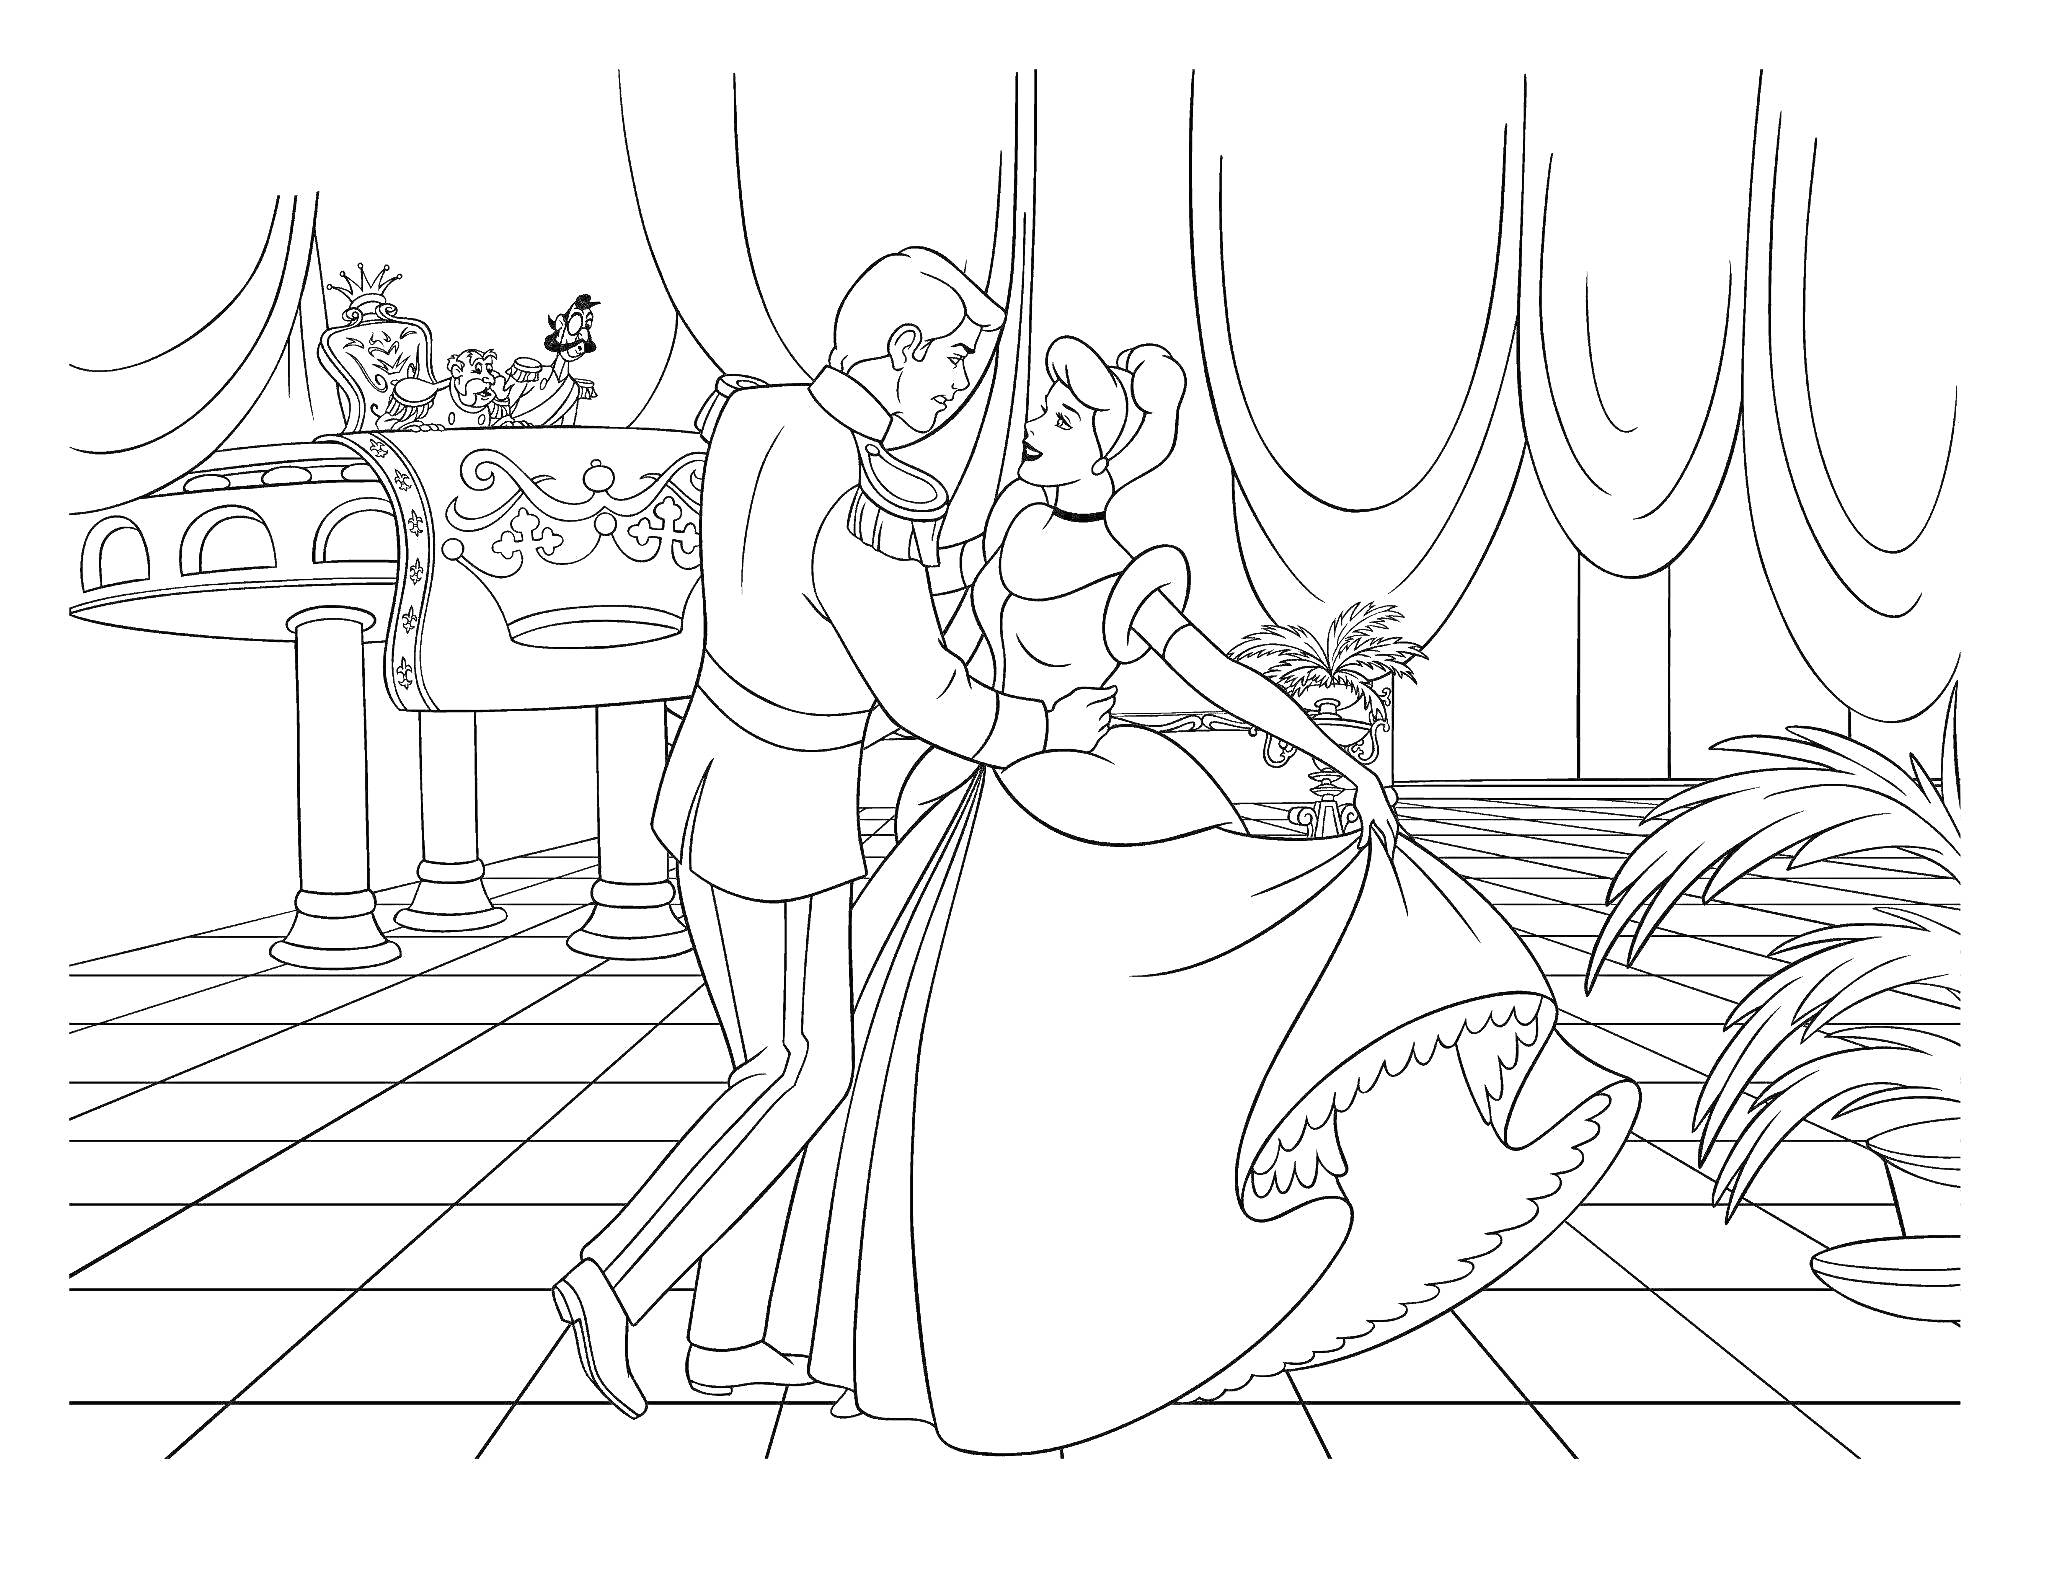 Бал во дворце с танцующей парой, декорациями и музыкальным сопровождением